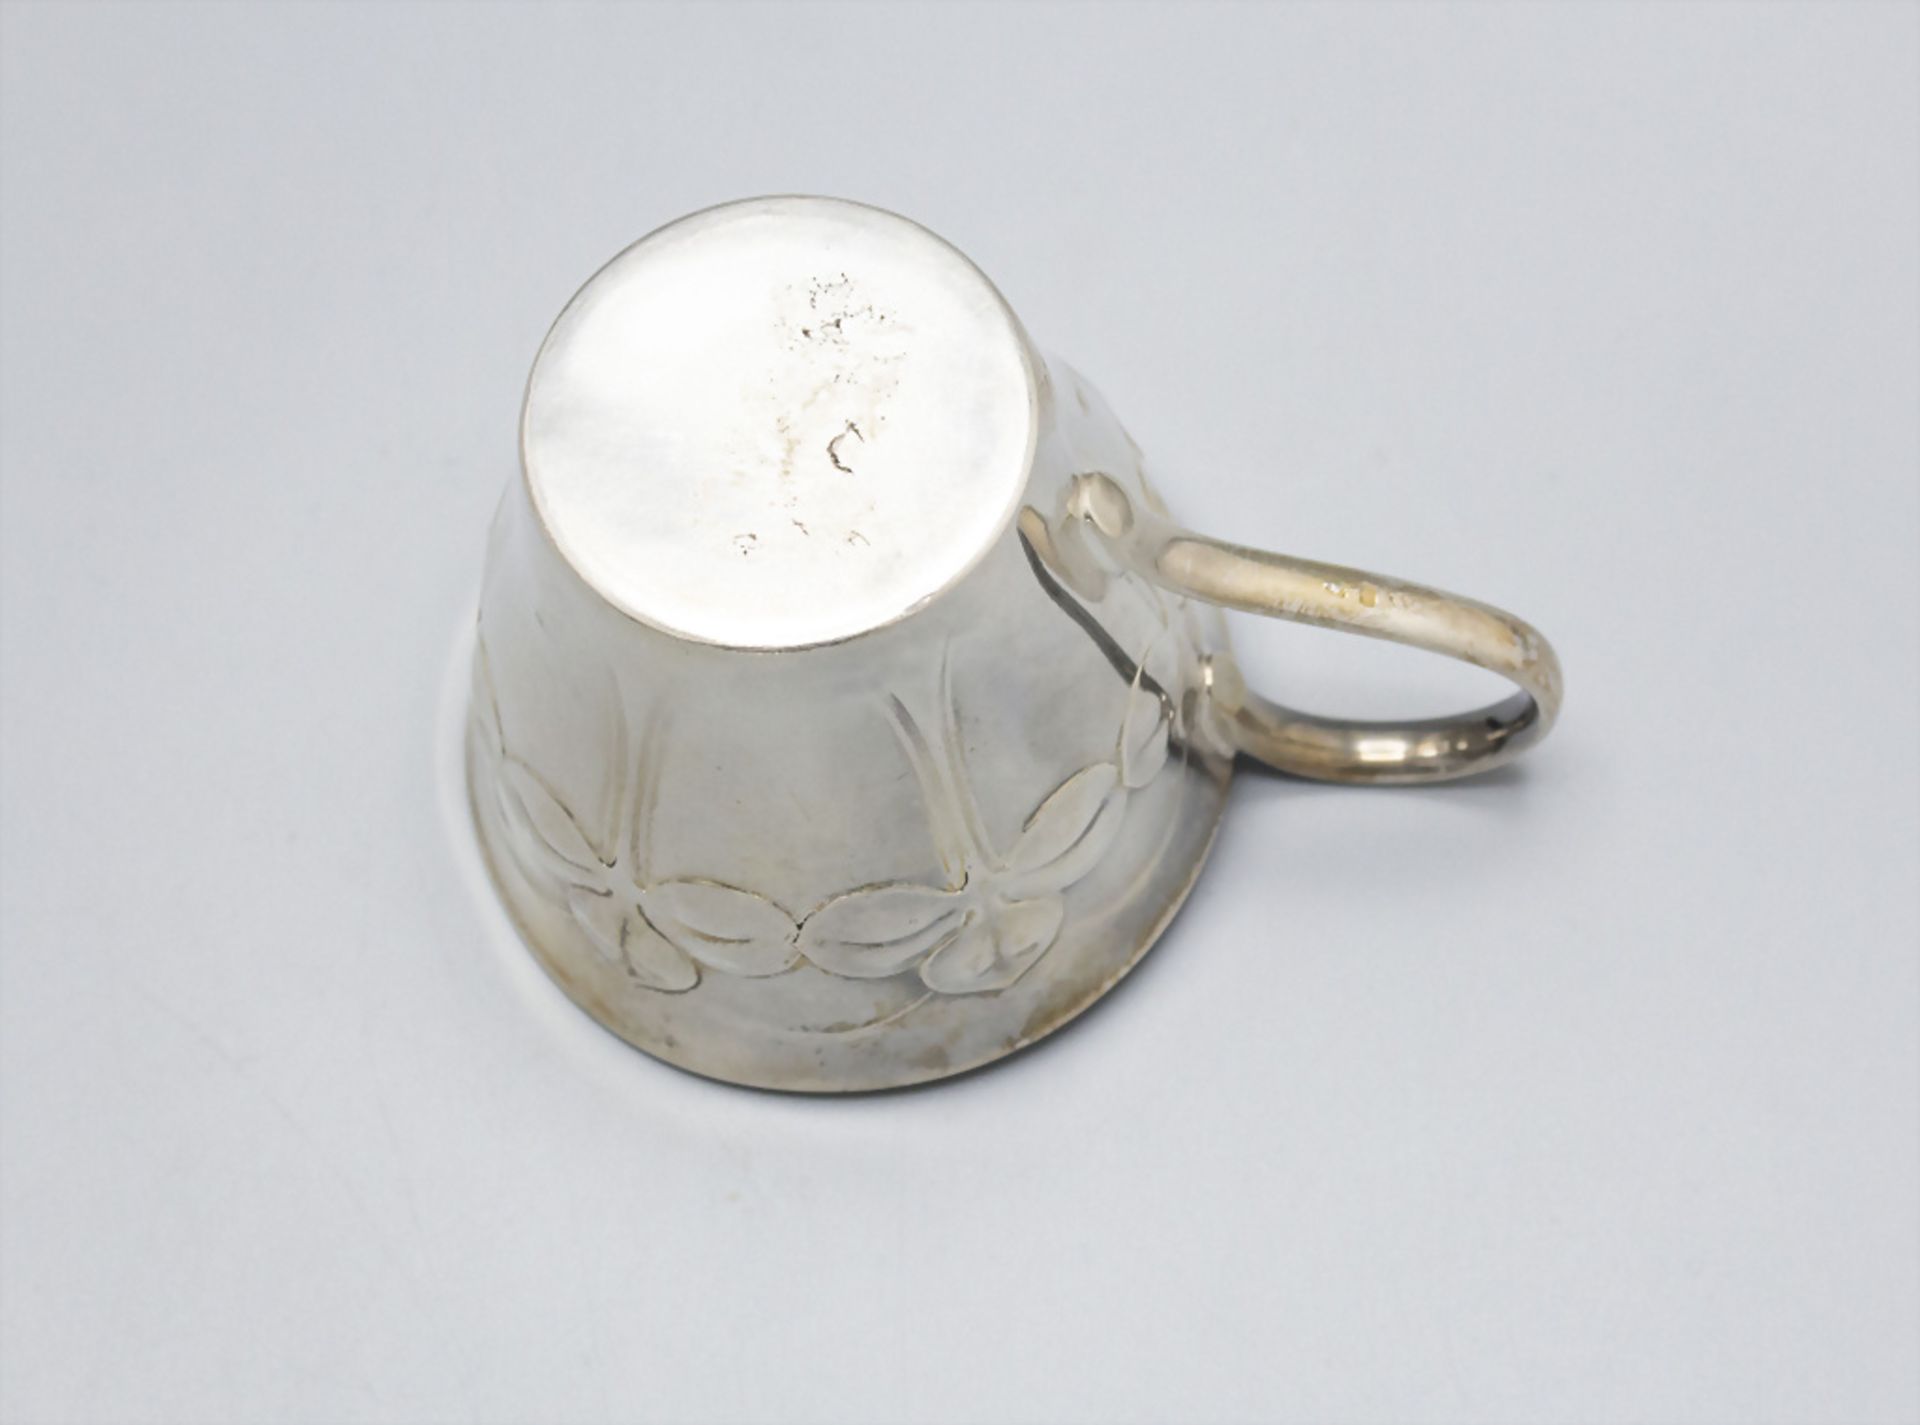 Jugendstil Tasse und Untertasse mit Kleeblattdekor / An Art Nouveau cup and saucer with ... - Image 3 of 6